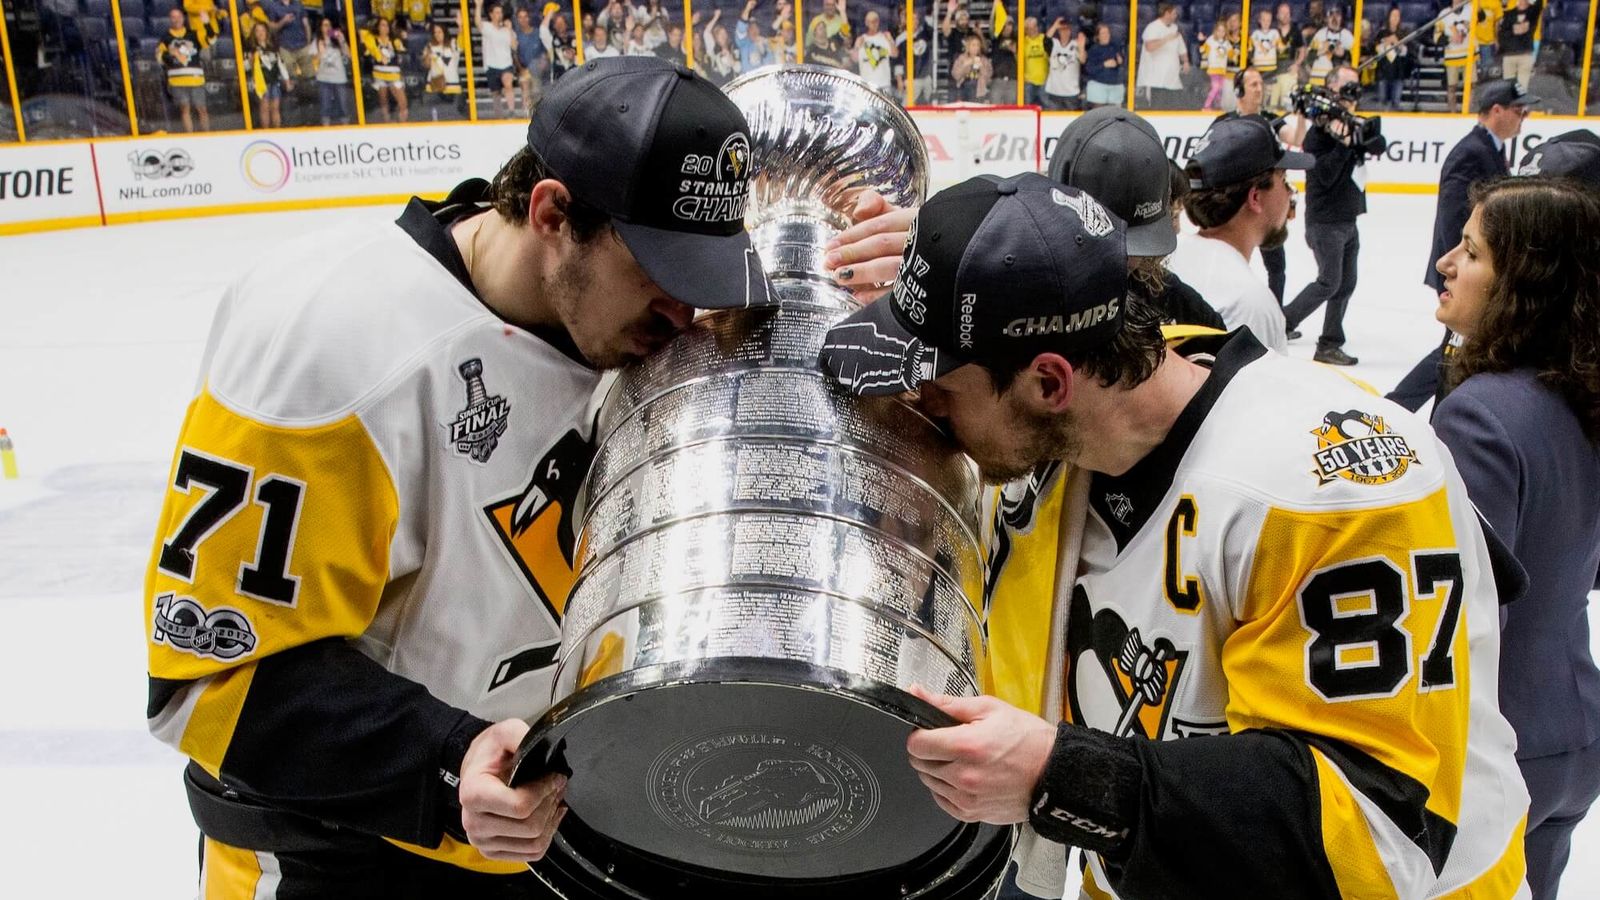 2017 Stanley Cup finals -- Penguins win Stanley Cup in